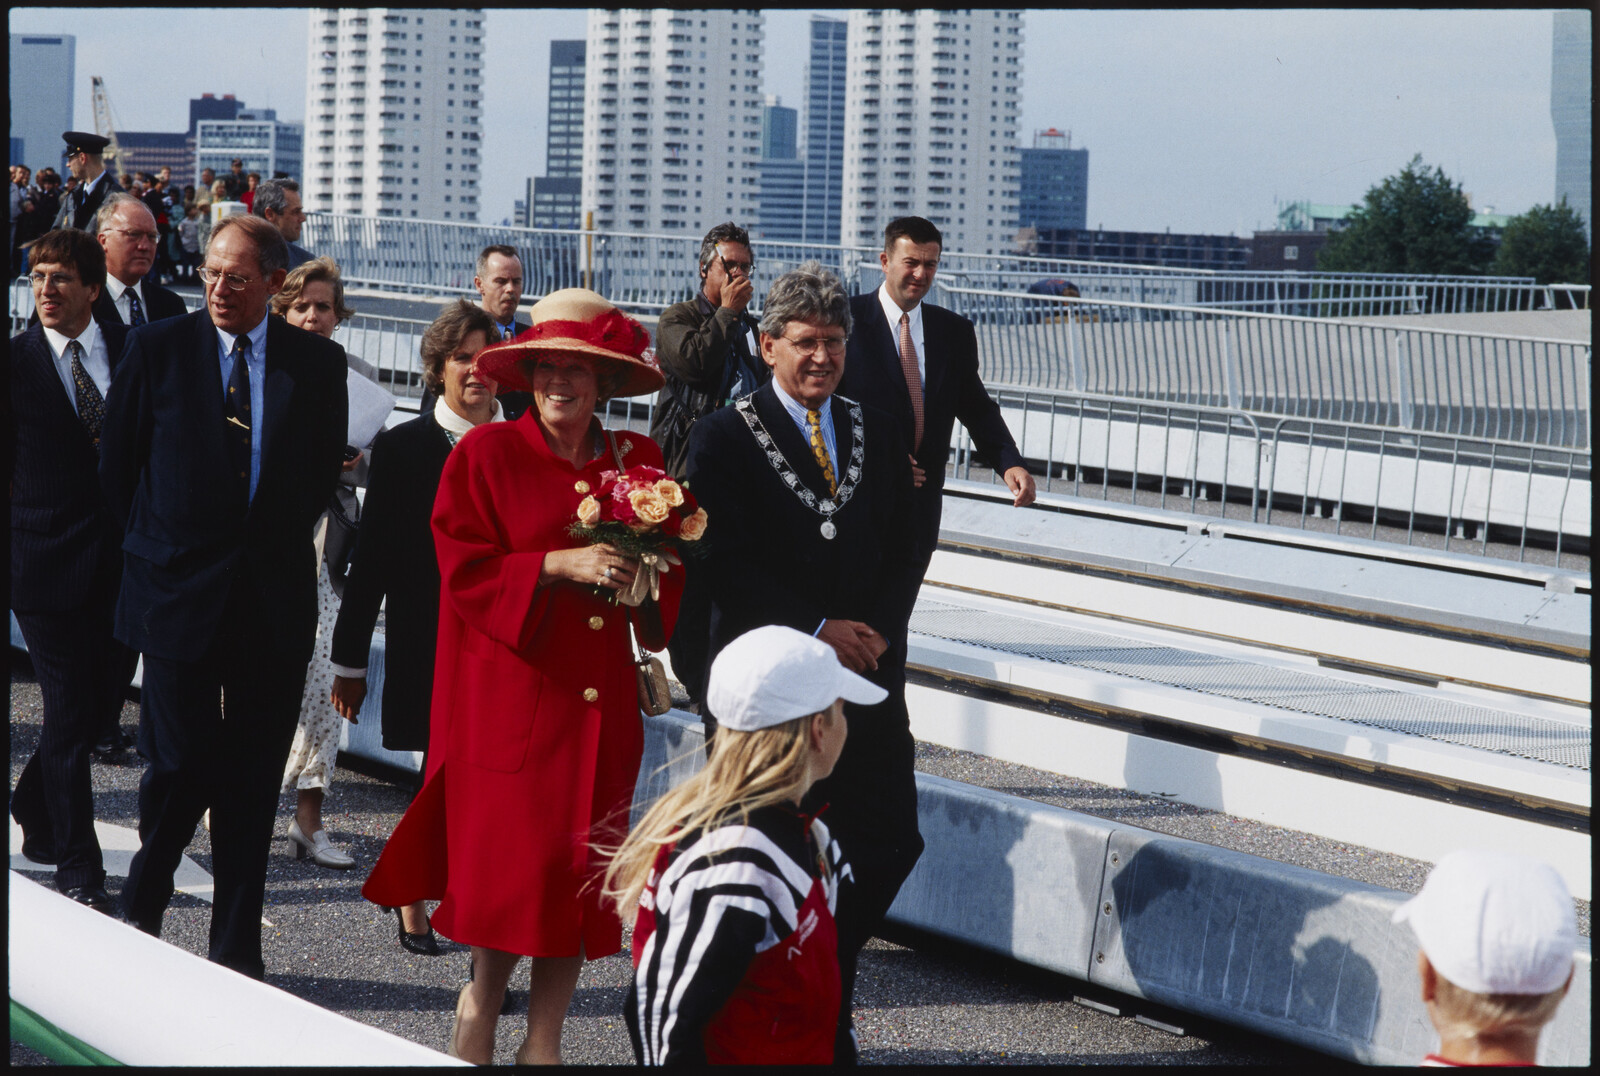 Erasmusbrug koninklijke opening @Stadsarchief Ontwikkelingsbedrijf Rotterdam